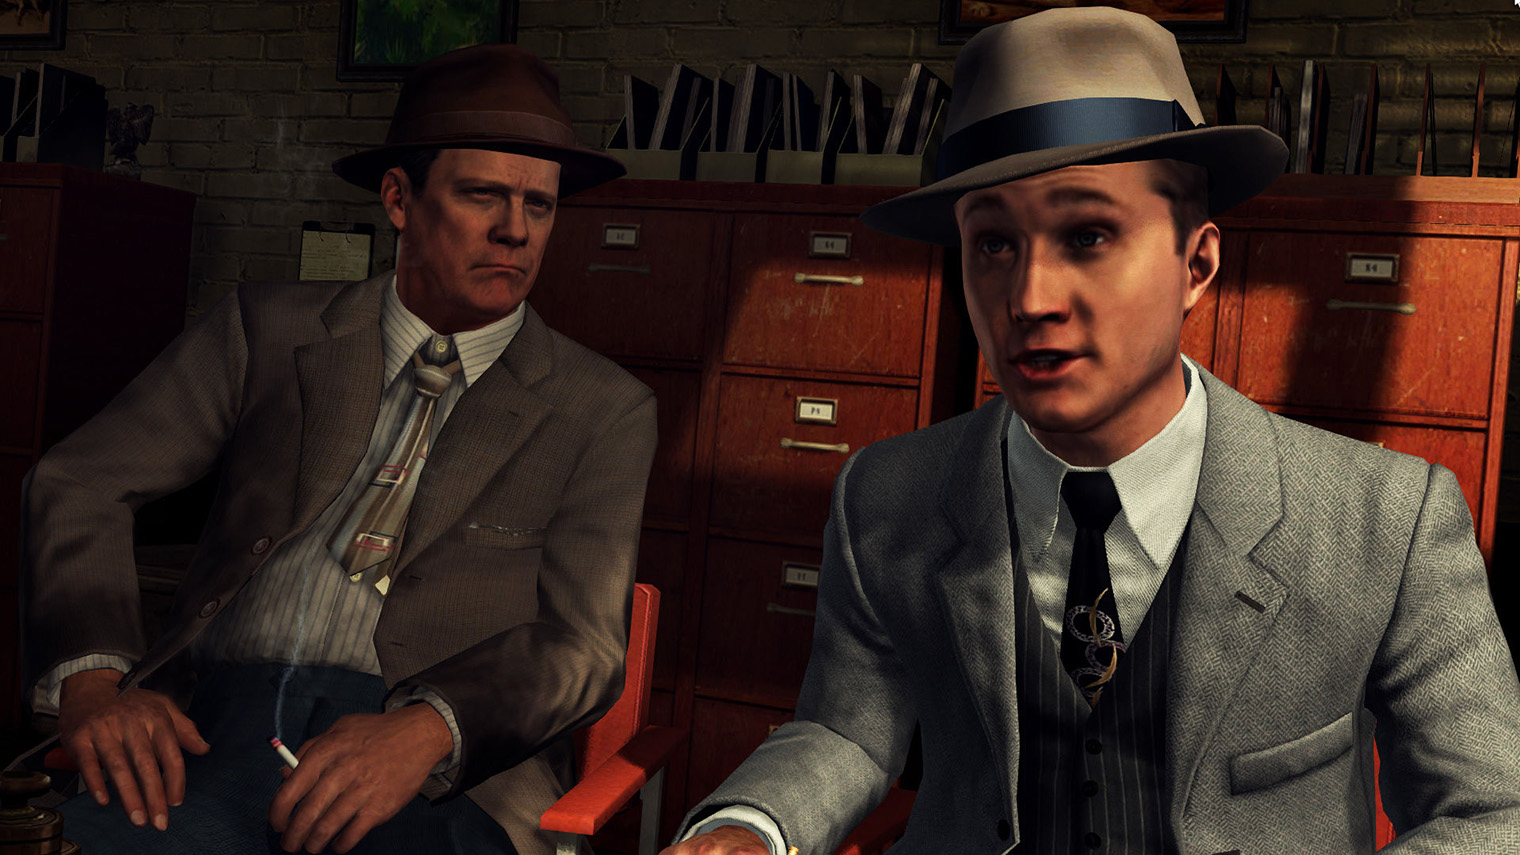 Большую часть времени детектив Коул Фелпс спокоен. Но иногда он оскорбляет подозреваемых и даже угрожает им. Кадр: Rockstar Games